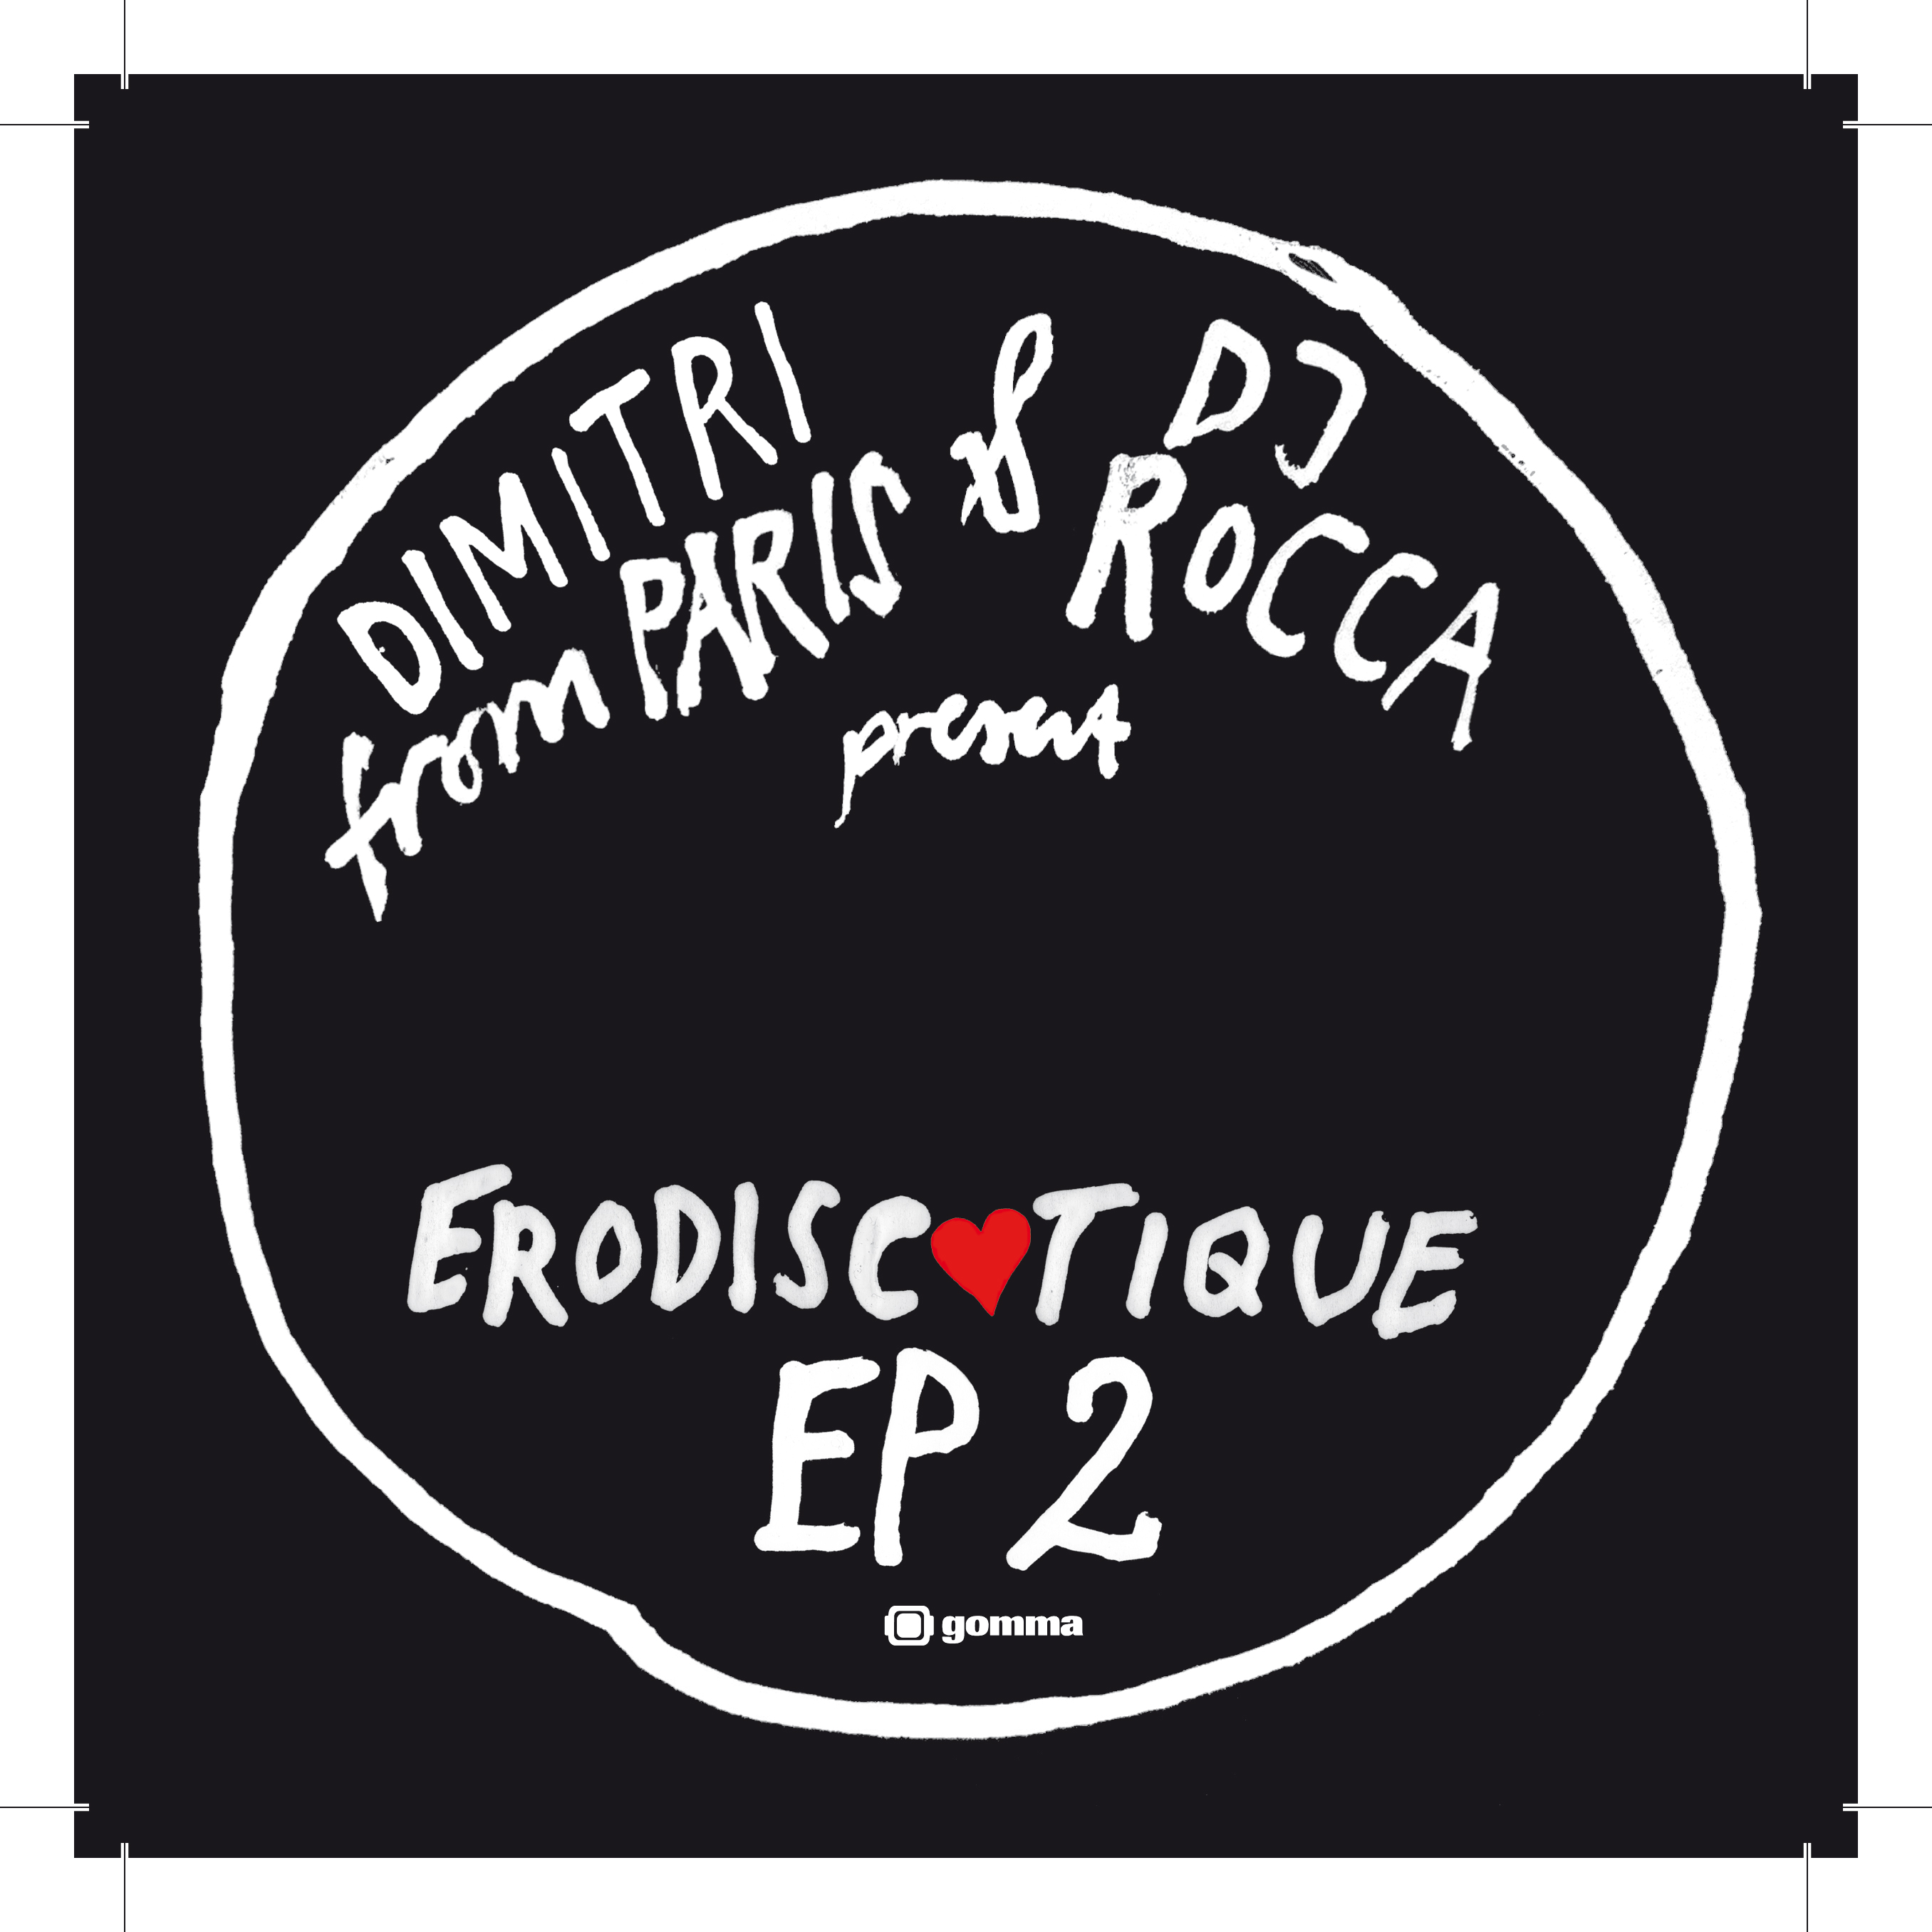 Dimitri From Paris & Dj Rocca - Erodiscotique EP 2